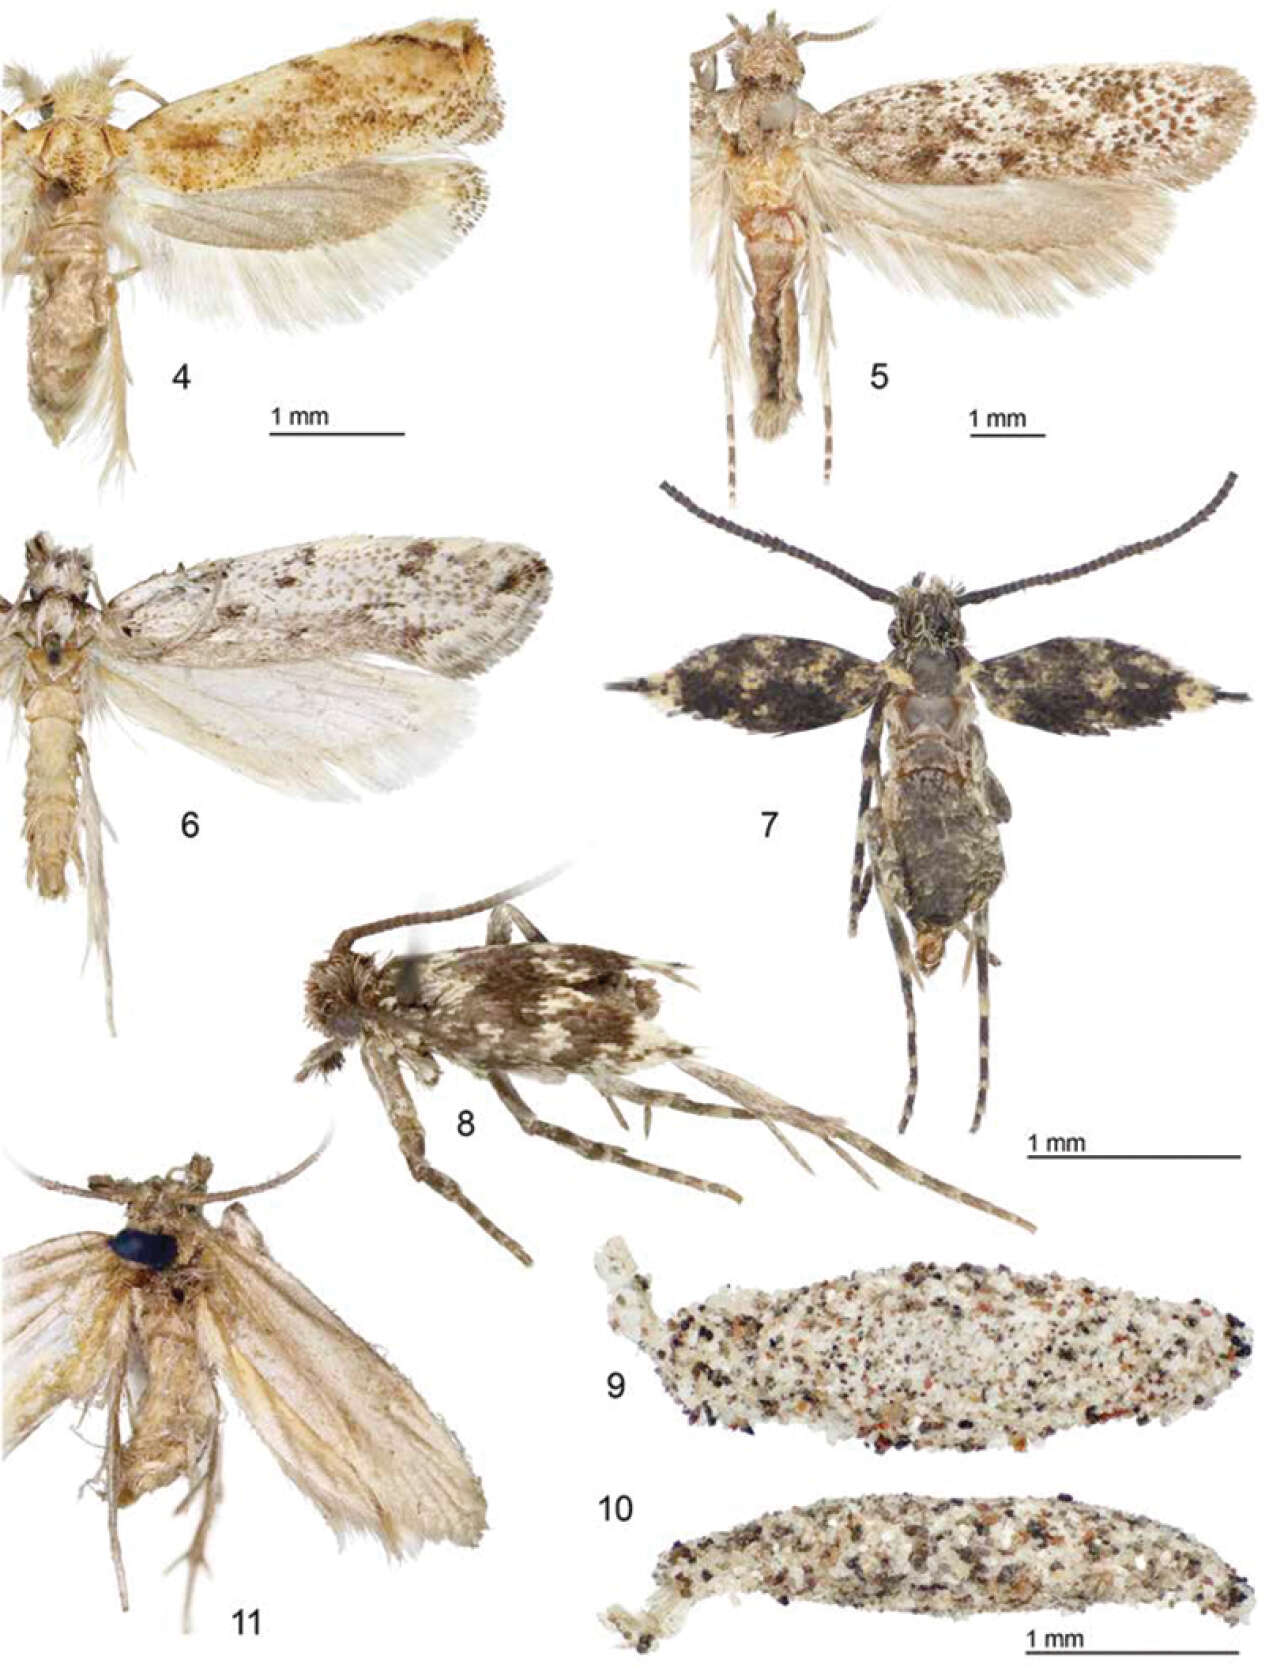 Image of tineid moths